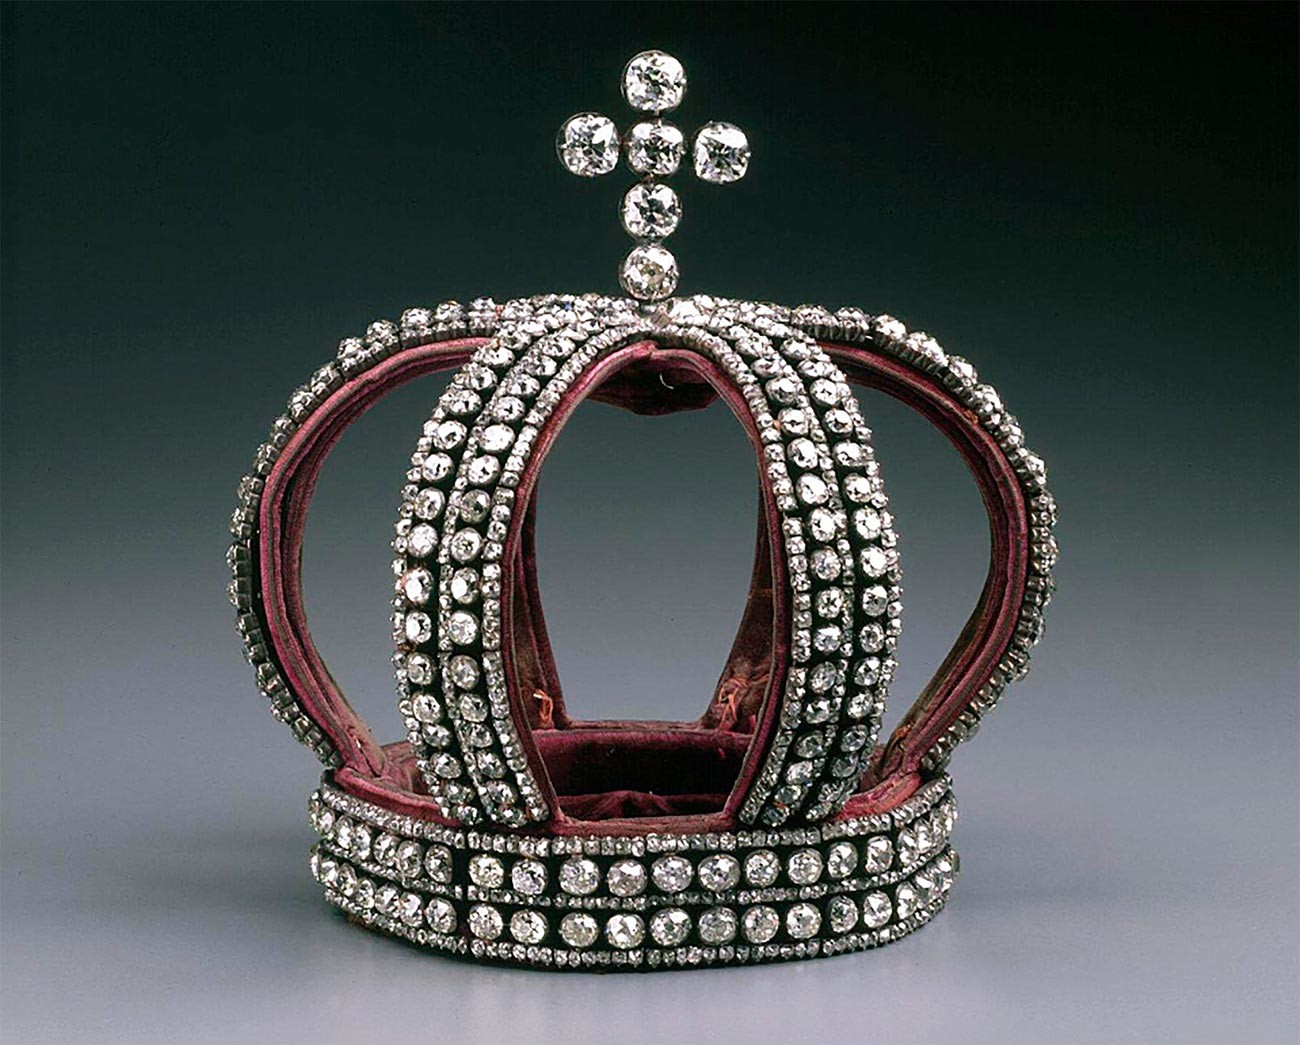 Une couronne impériale des Romanov de 1884 en argent, diamants et velours